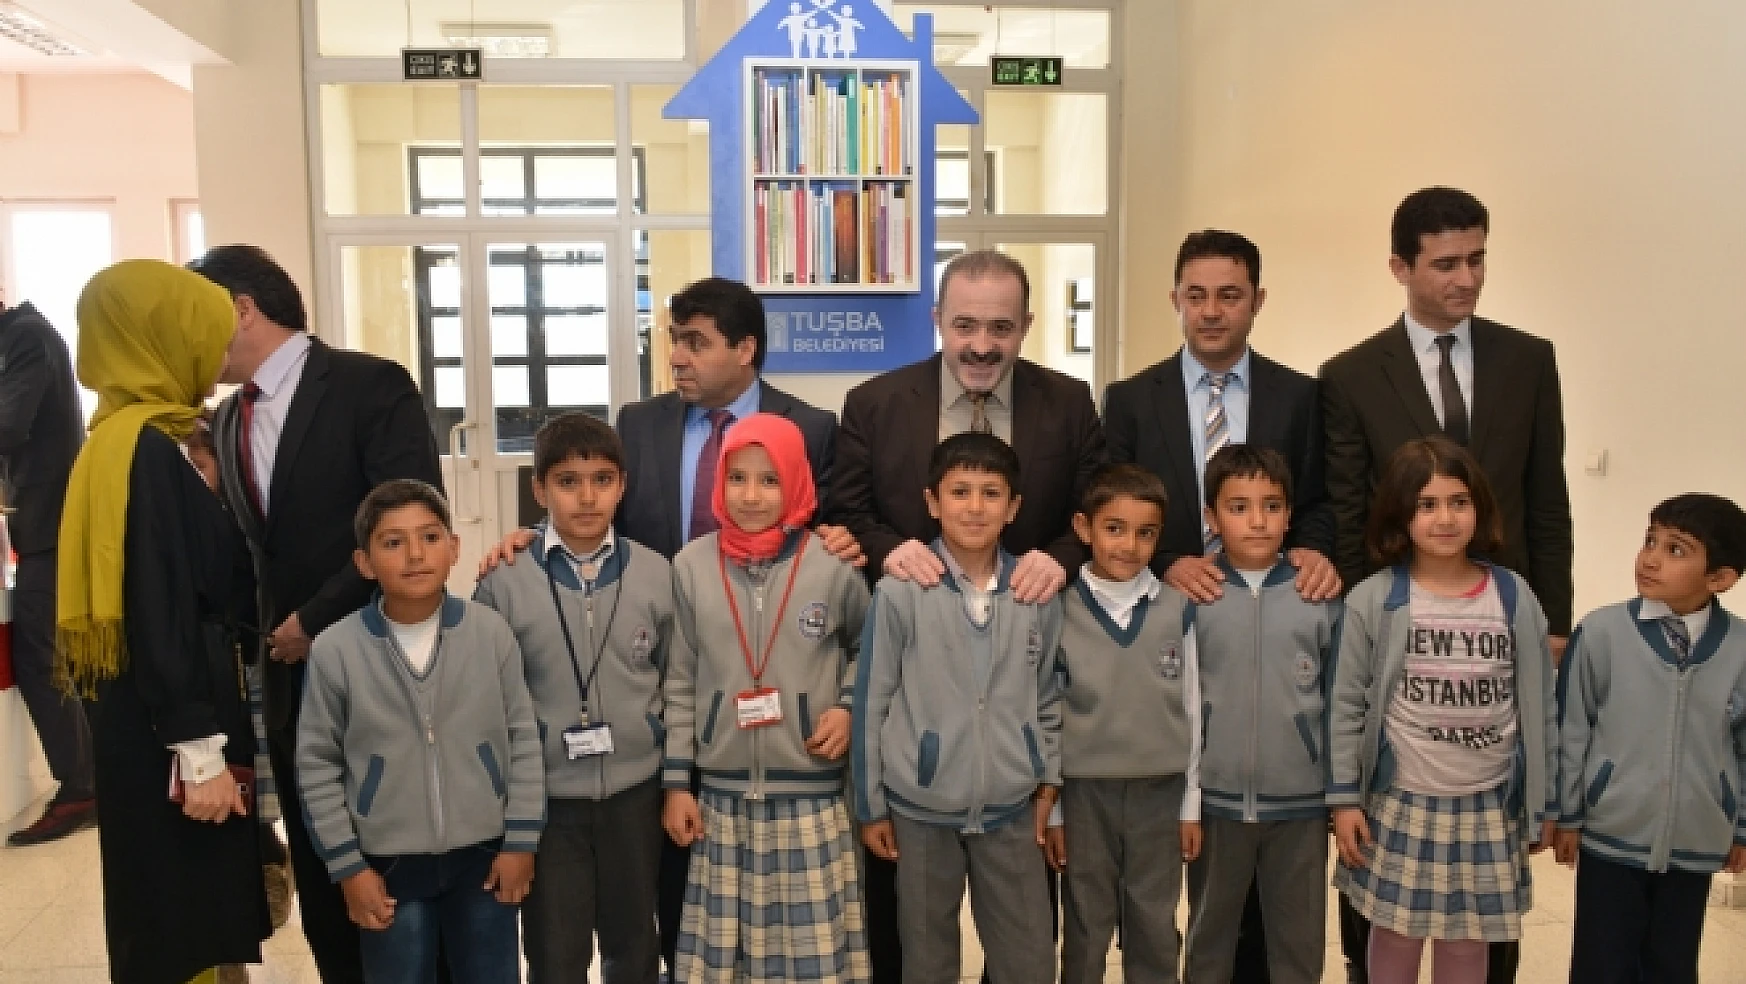 Tuşba Belediyesi Okullara Mini Kütüphane Kurdu 